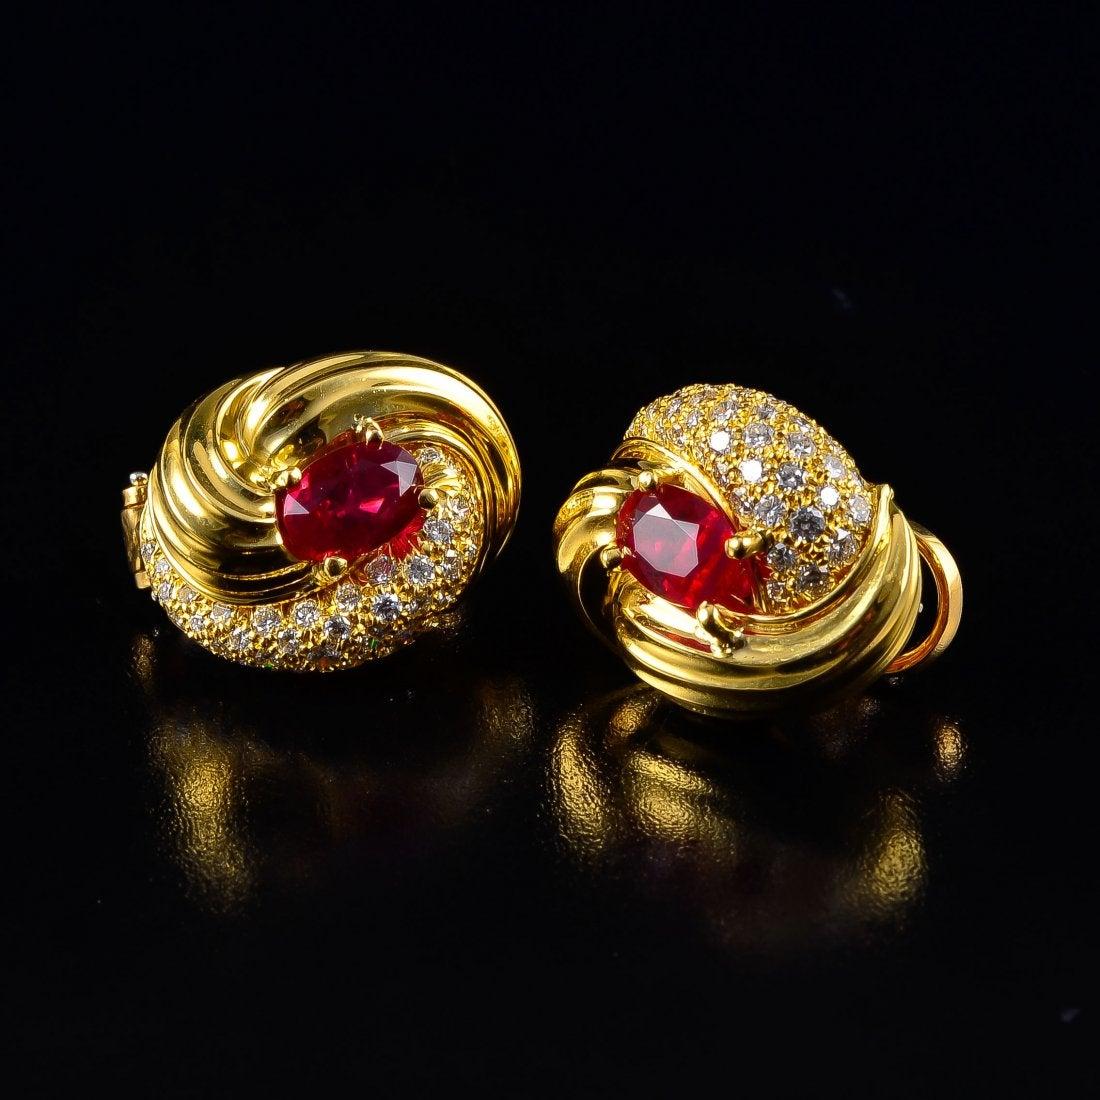 Une superbe paire de boucles d'oreilles vintage des années 1980 en or 18k, rubis et diamants par Henry Dunay, 

Les boucles d'oreilles sont de forme nouée, avec une paire de rubis birmans bien assortis au centre - environ 3,45 ct au total. 
Un côté